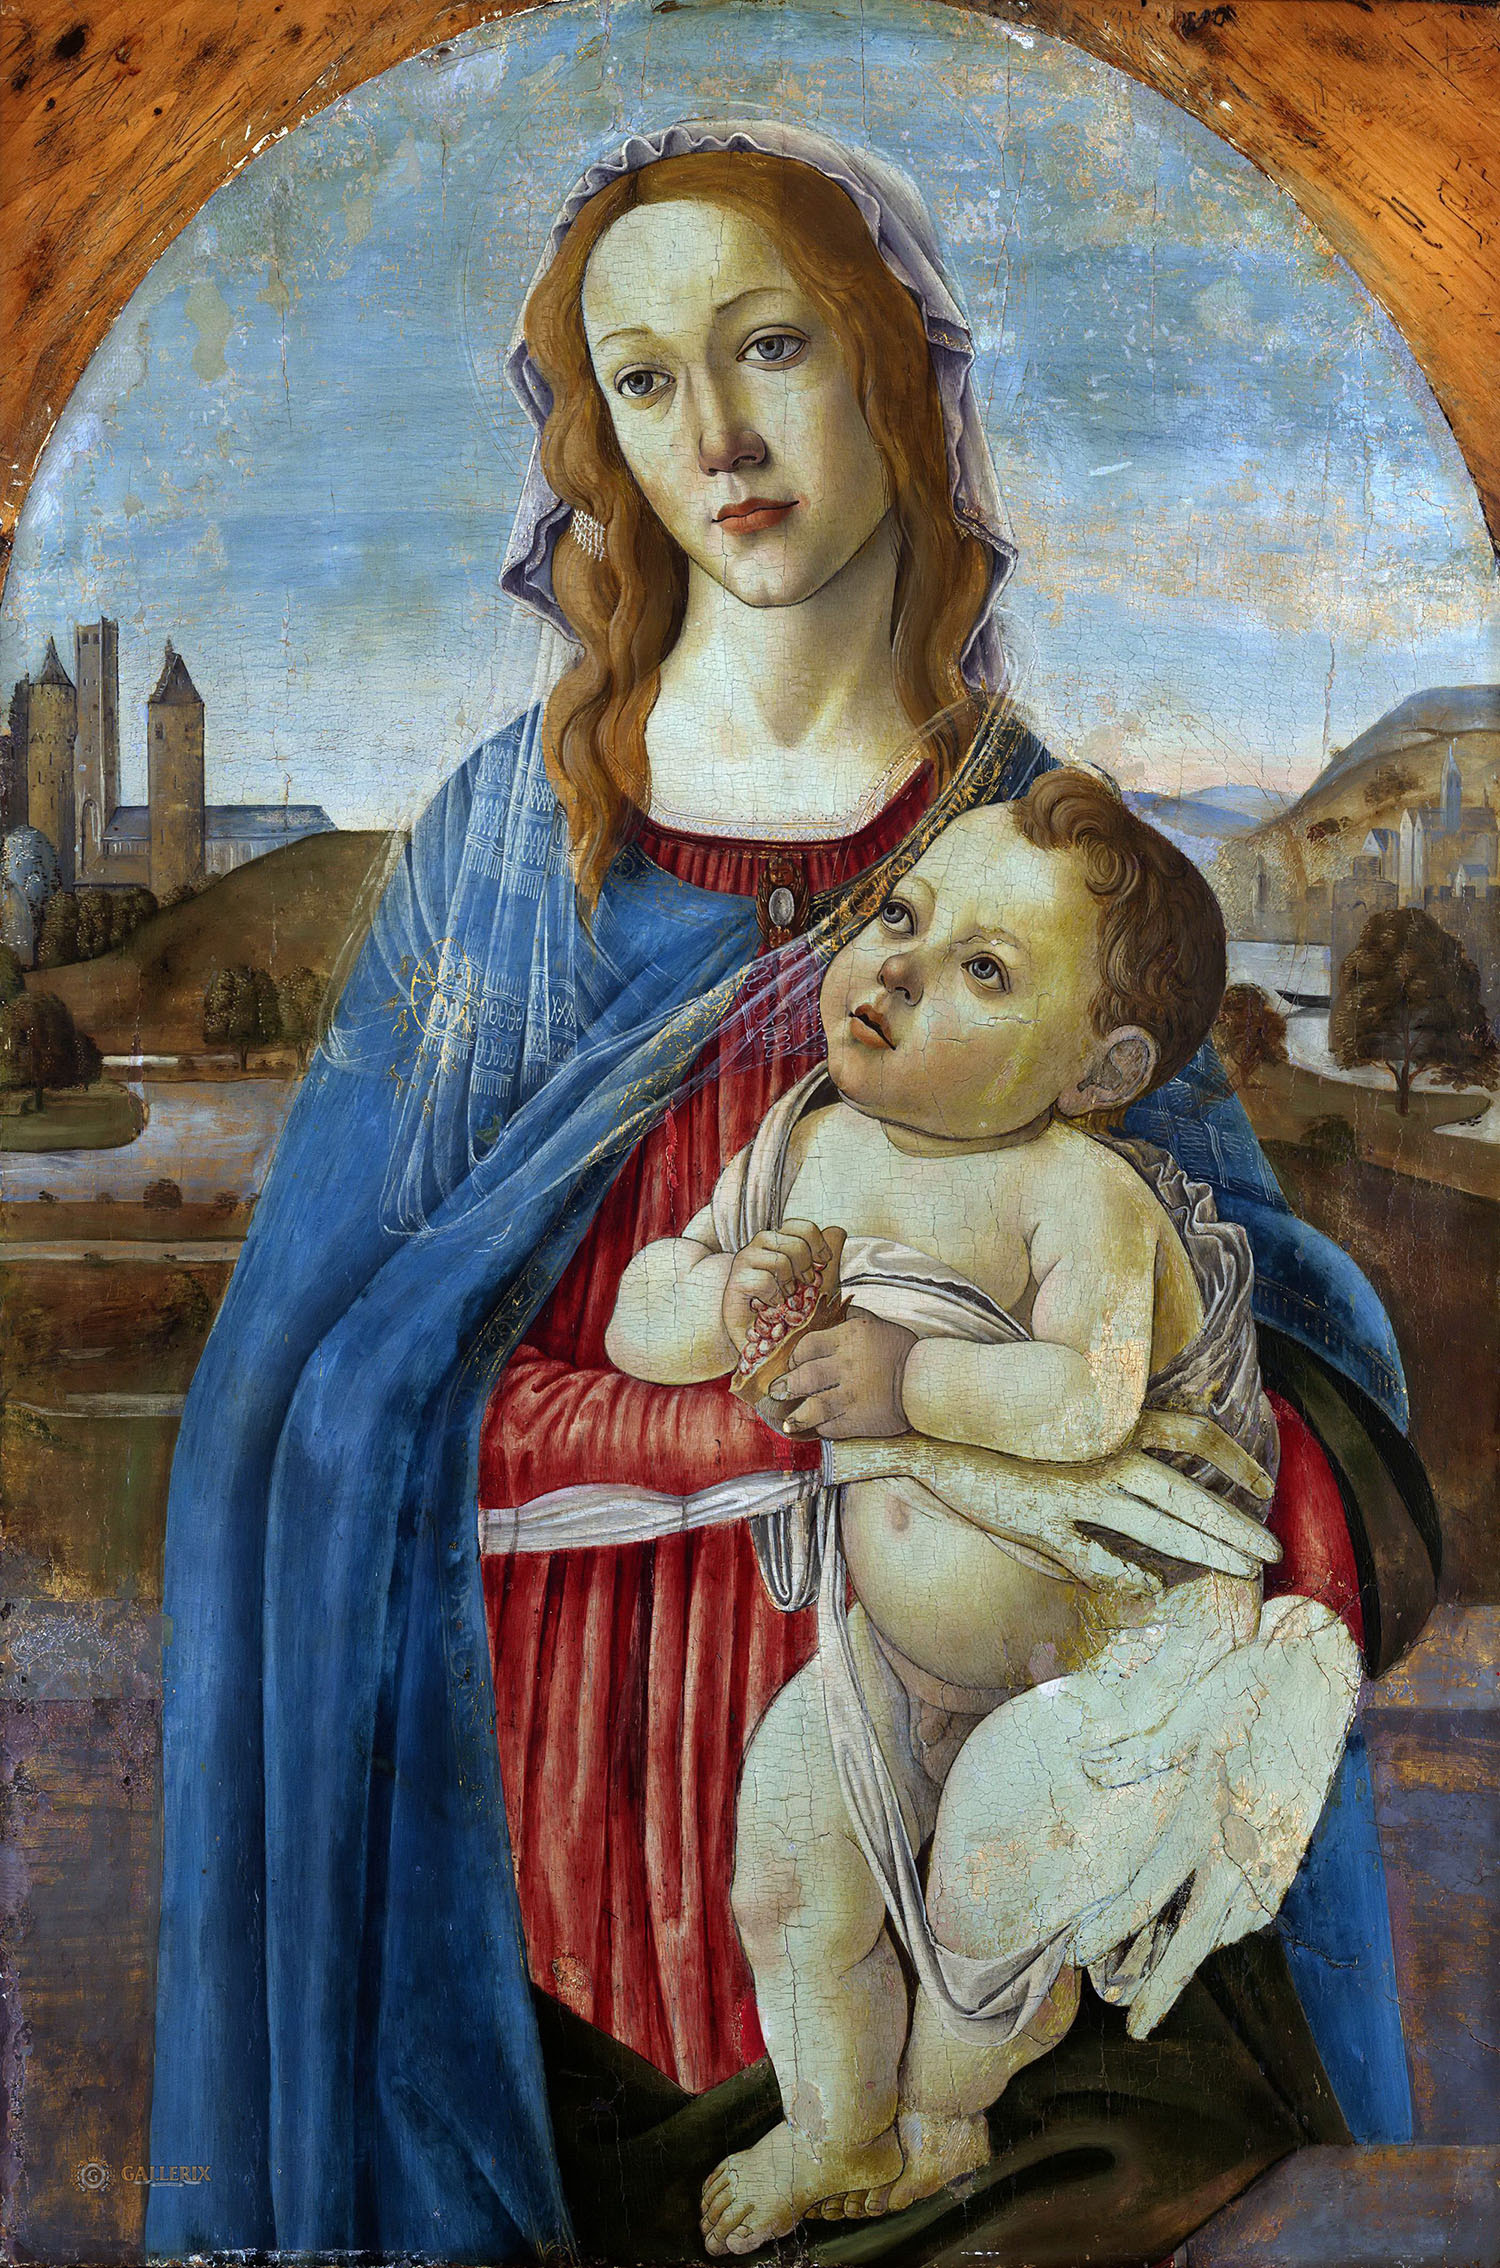 Сандро Боттичелли. "Мадонна с Младенцем". Около 1485. Художественная галерея Йельского университета, Нью-Хейвен.